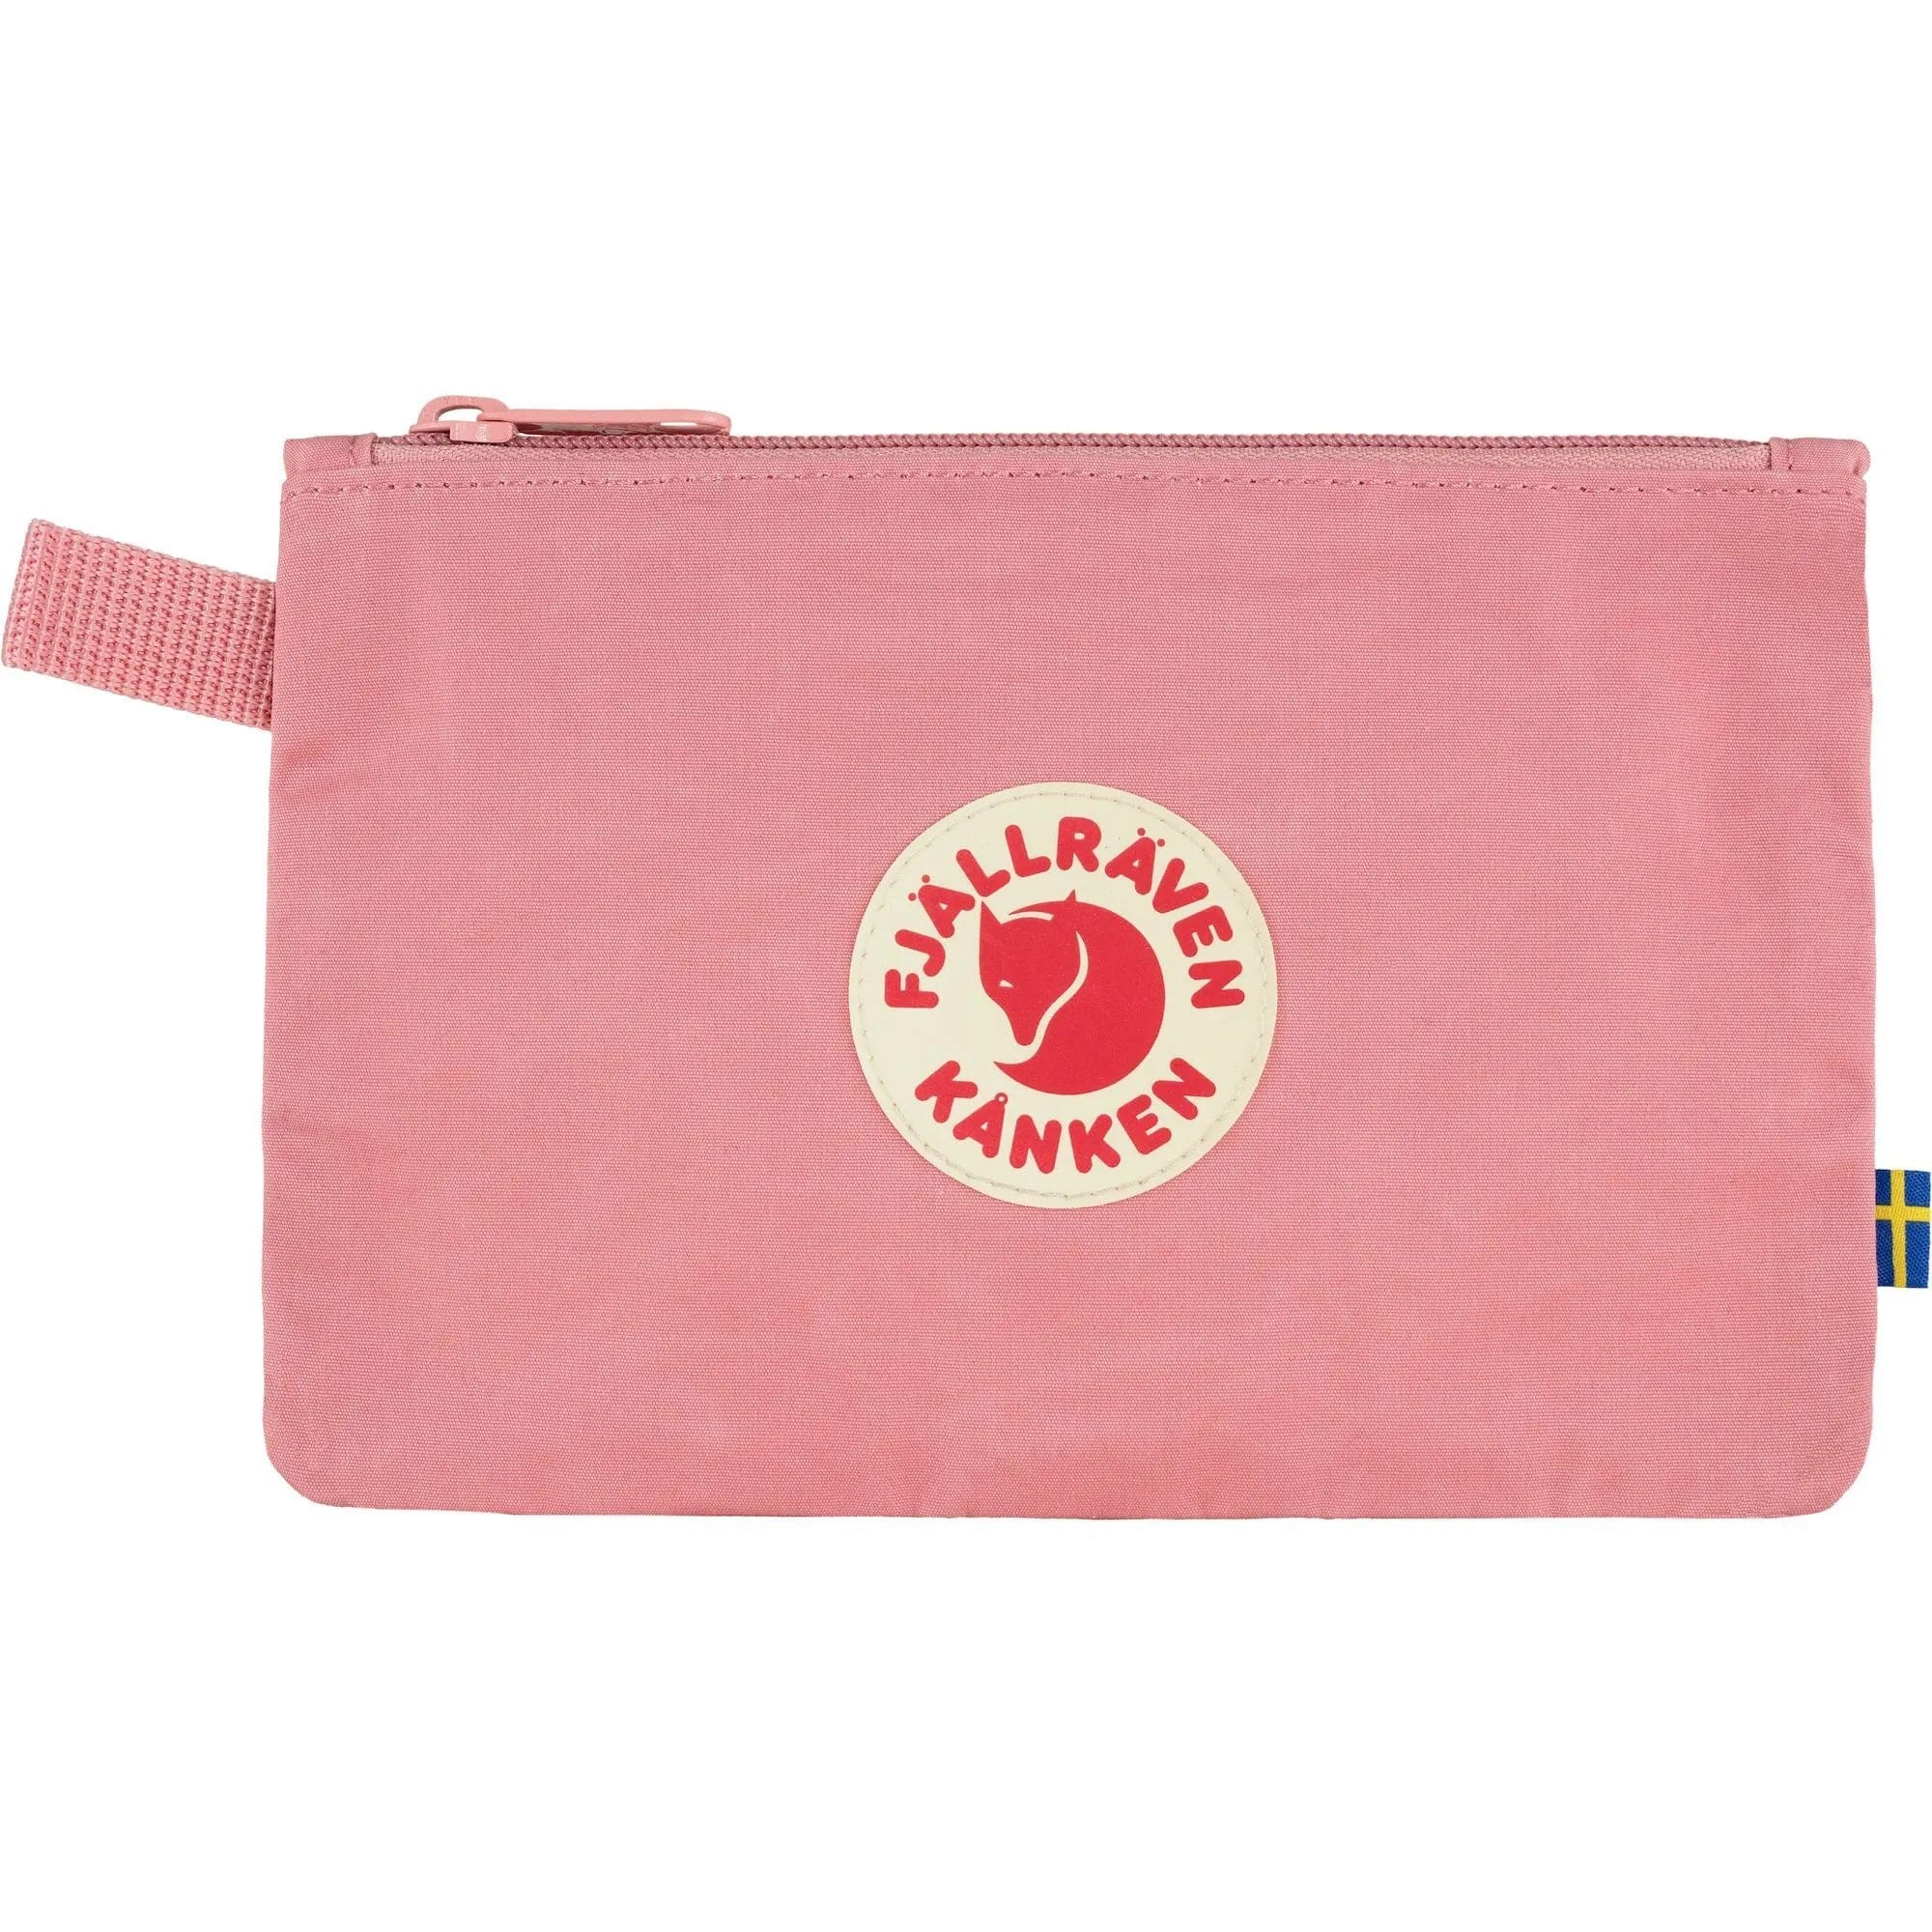 Fjällräven Bags One Size / Pink FJÄLLRÄVEN - Kånken Gear Pocket